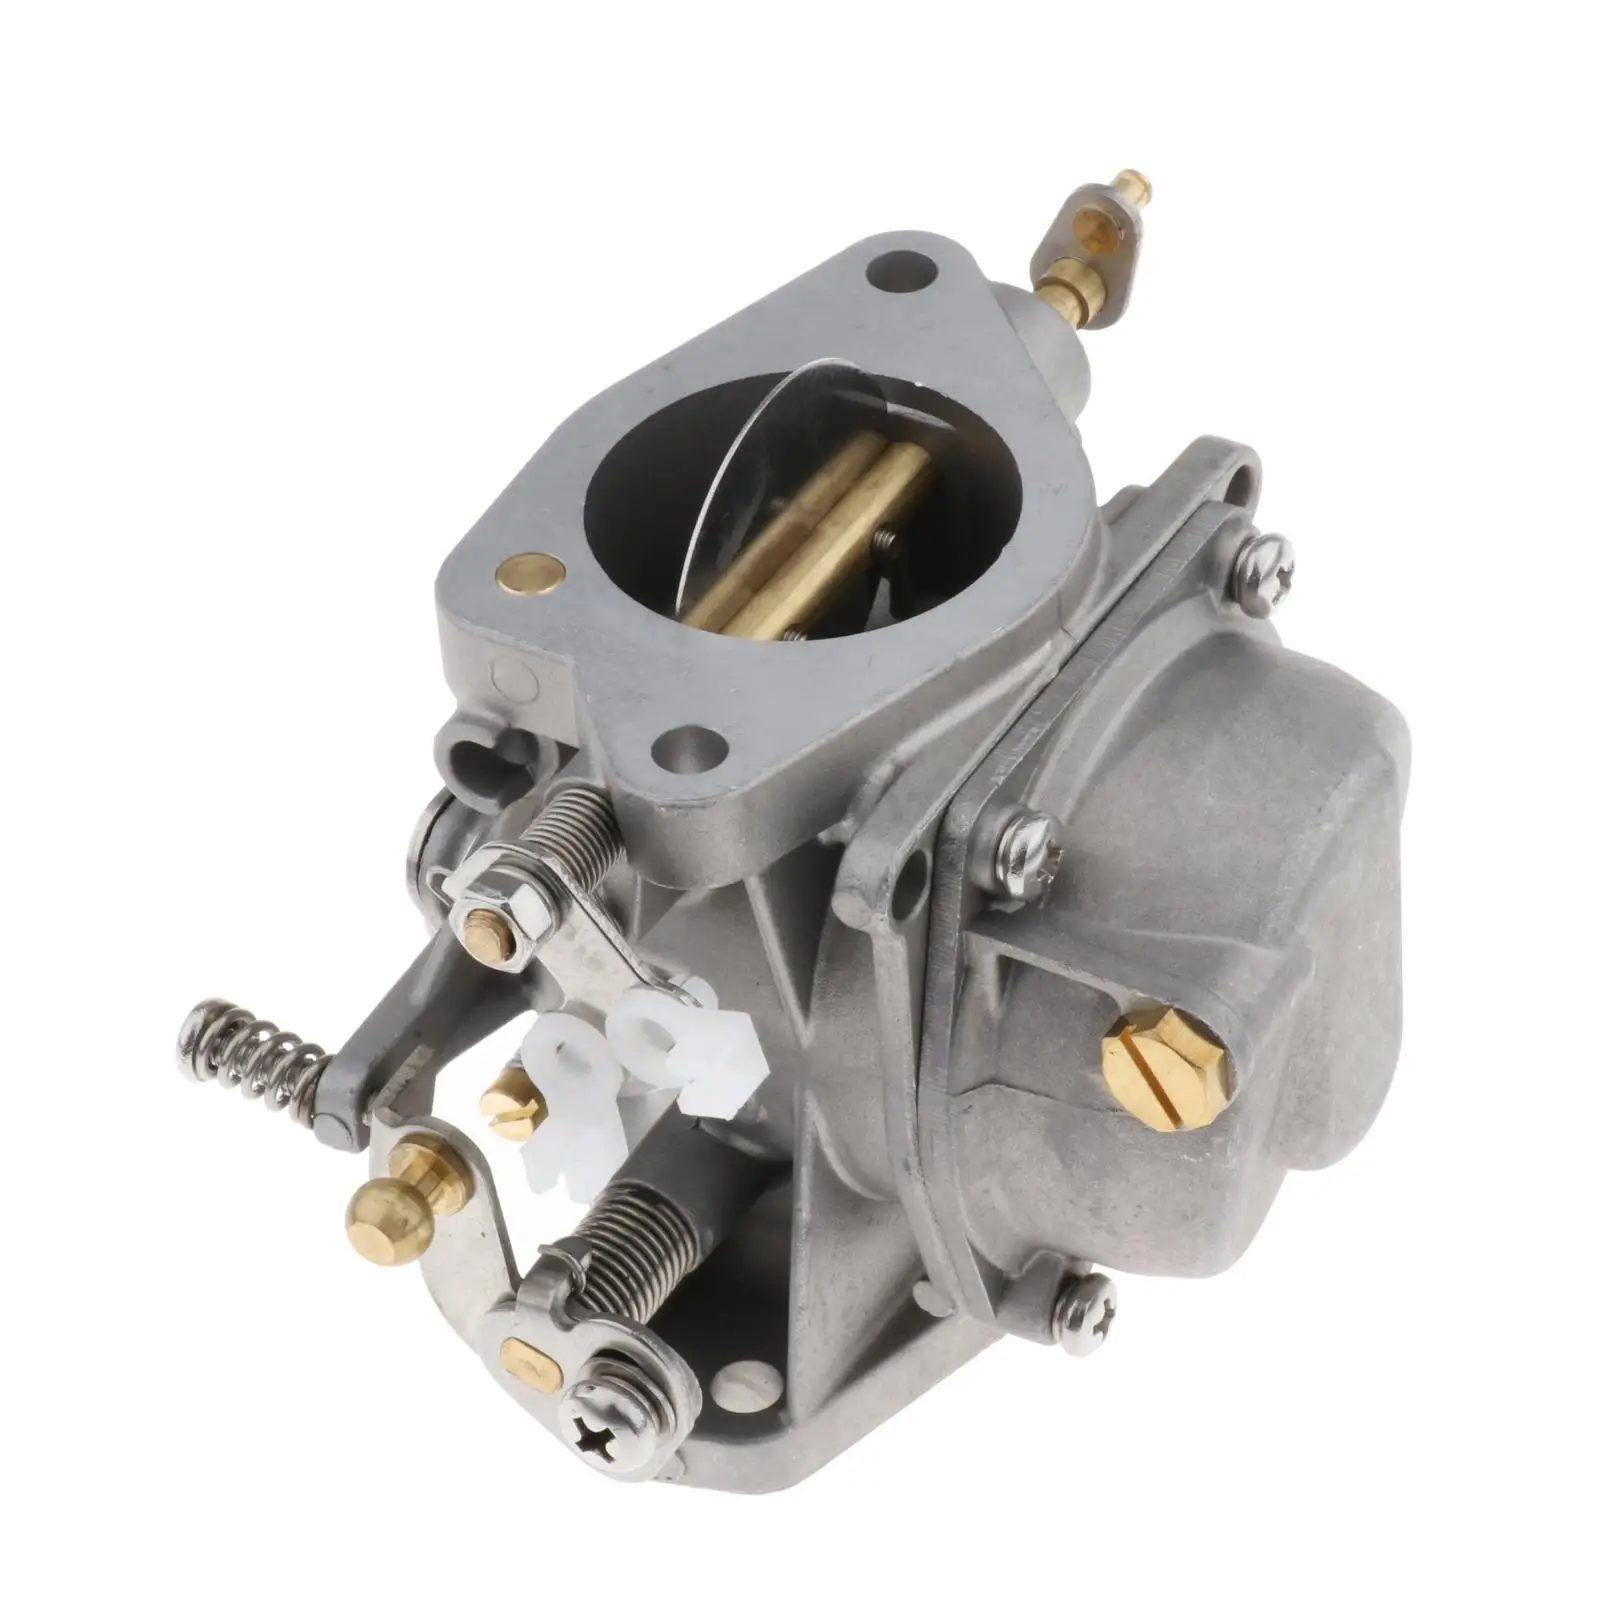 : 6K5-14301-02 6K5-14301 Middle Carburetor 80mm Portable for  Outboard Engine Aftermarket parts Stroke Marine Engine